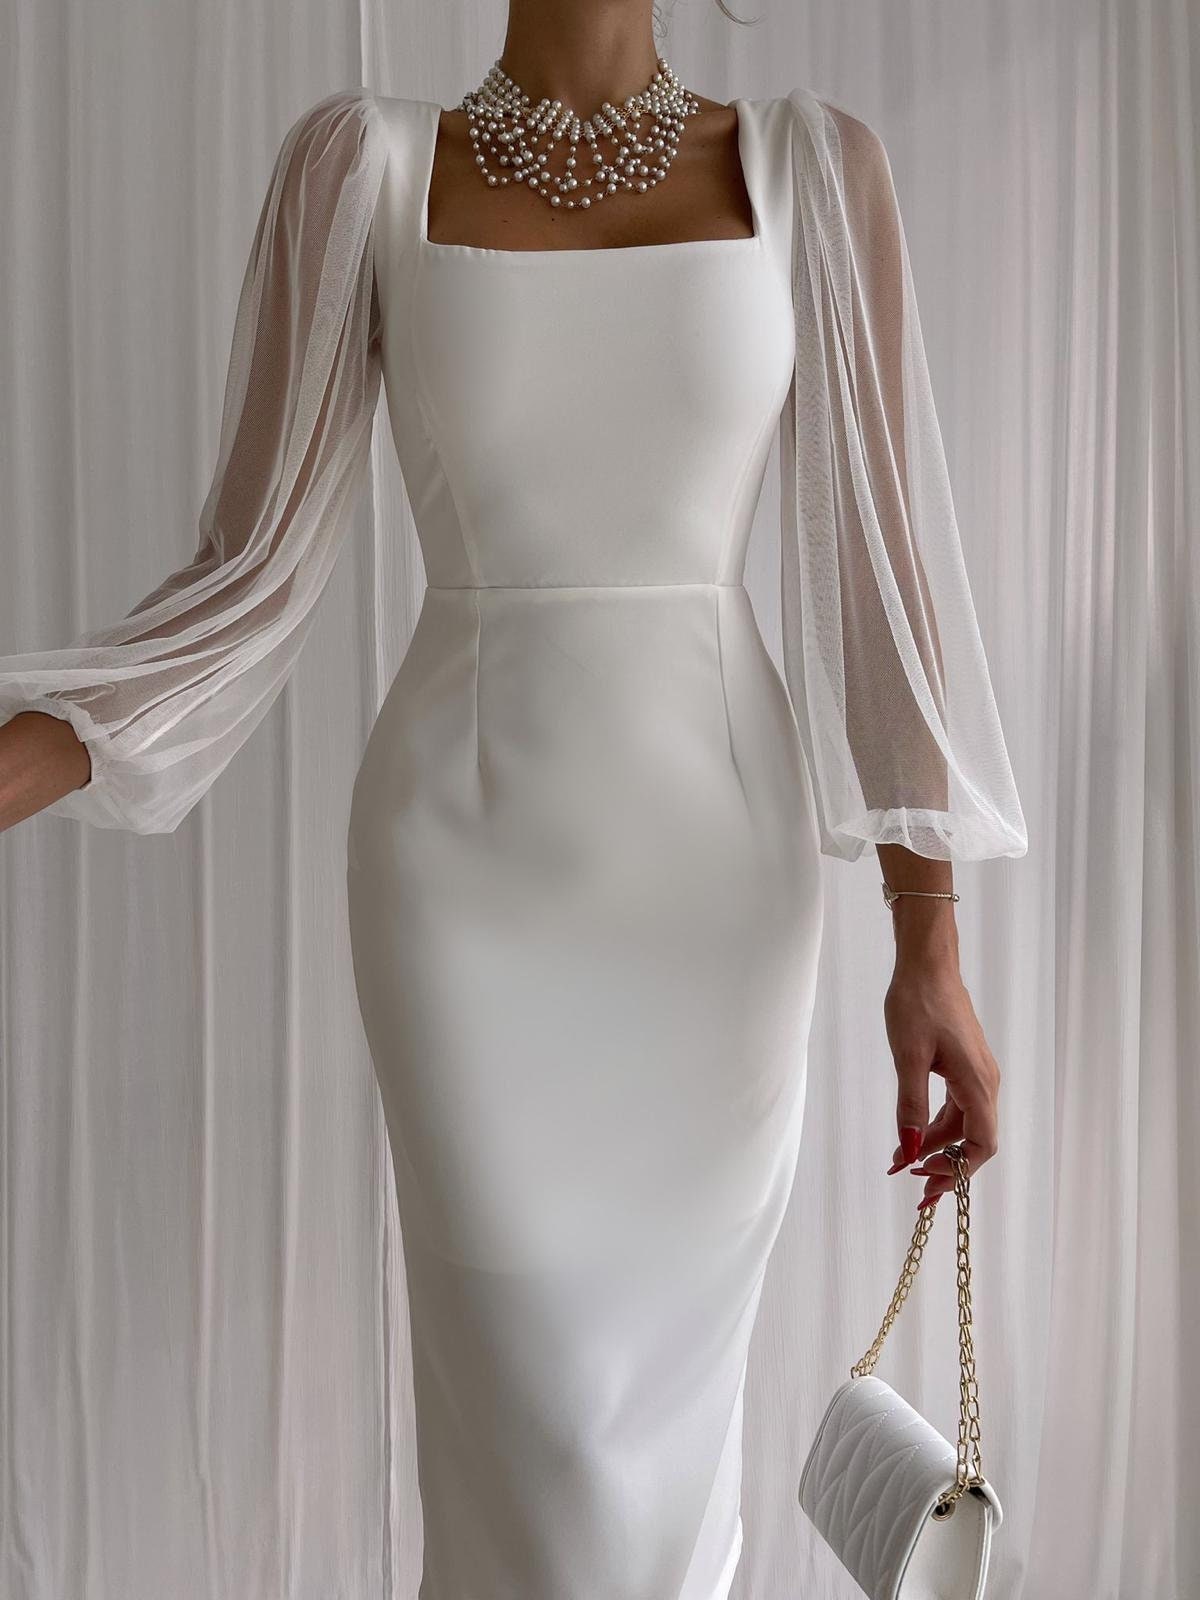 Formal White Dresses For Women